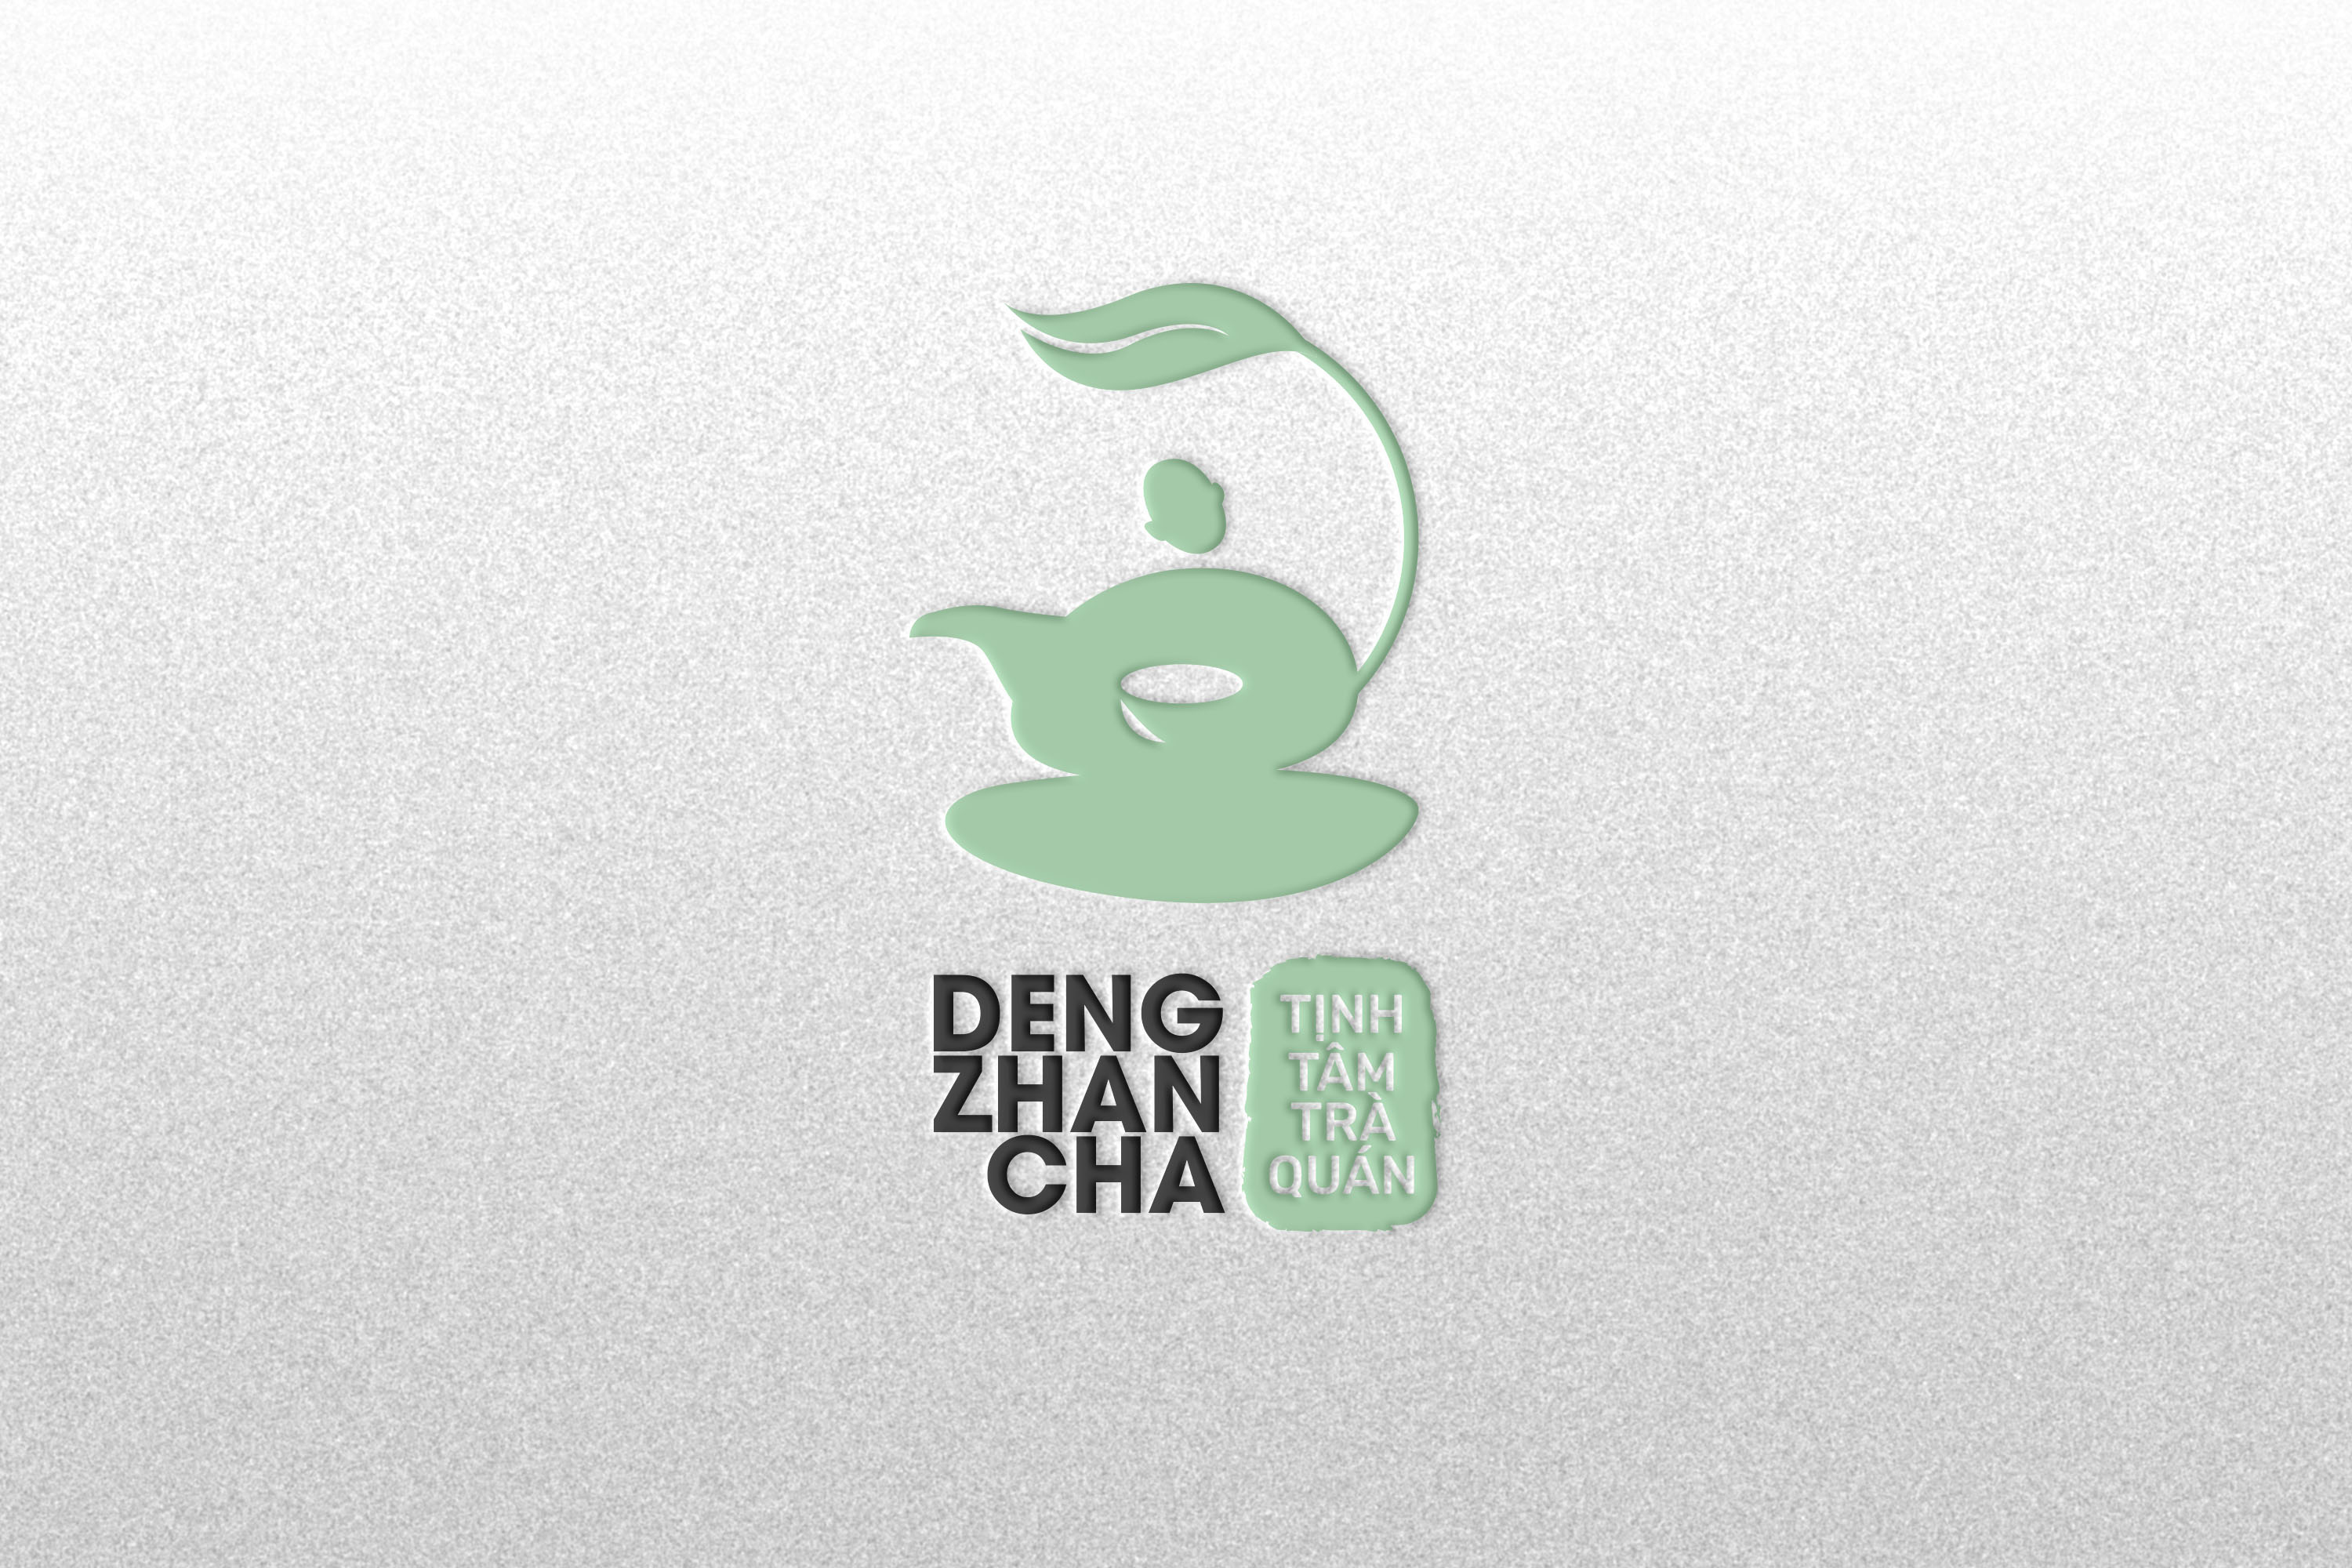 Brandall Agency Create Brand and Packaging Design for Tịnh Tâm Trà Quán Vietnamese Tea